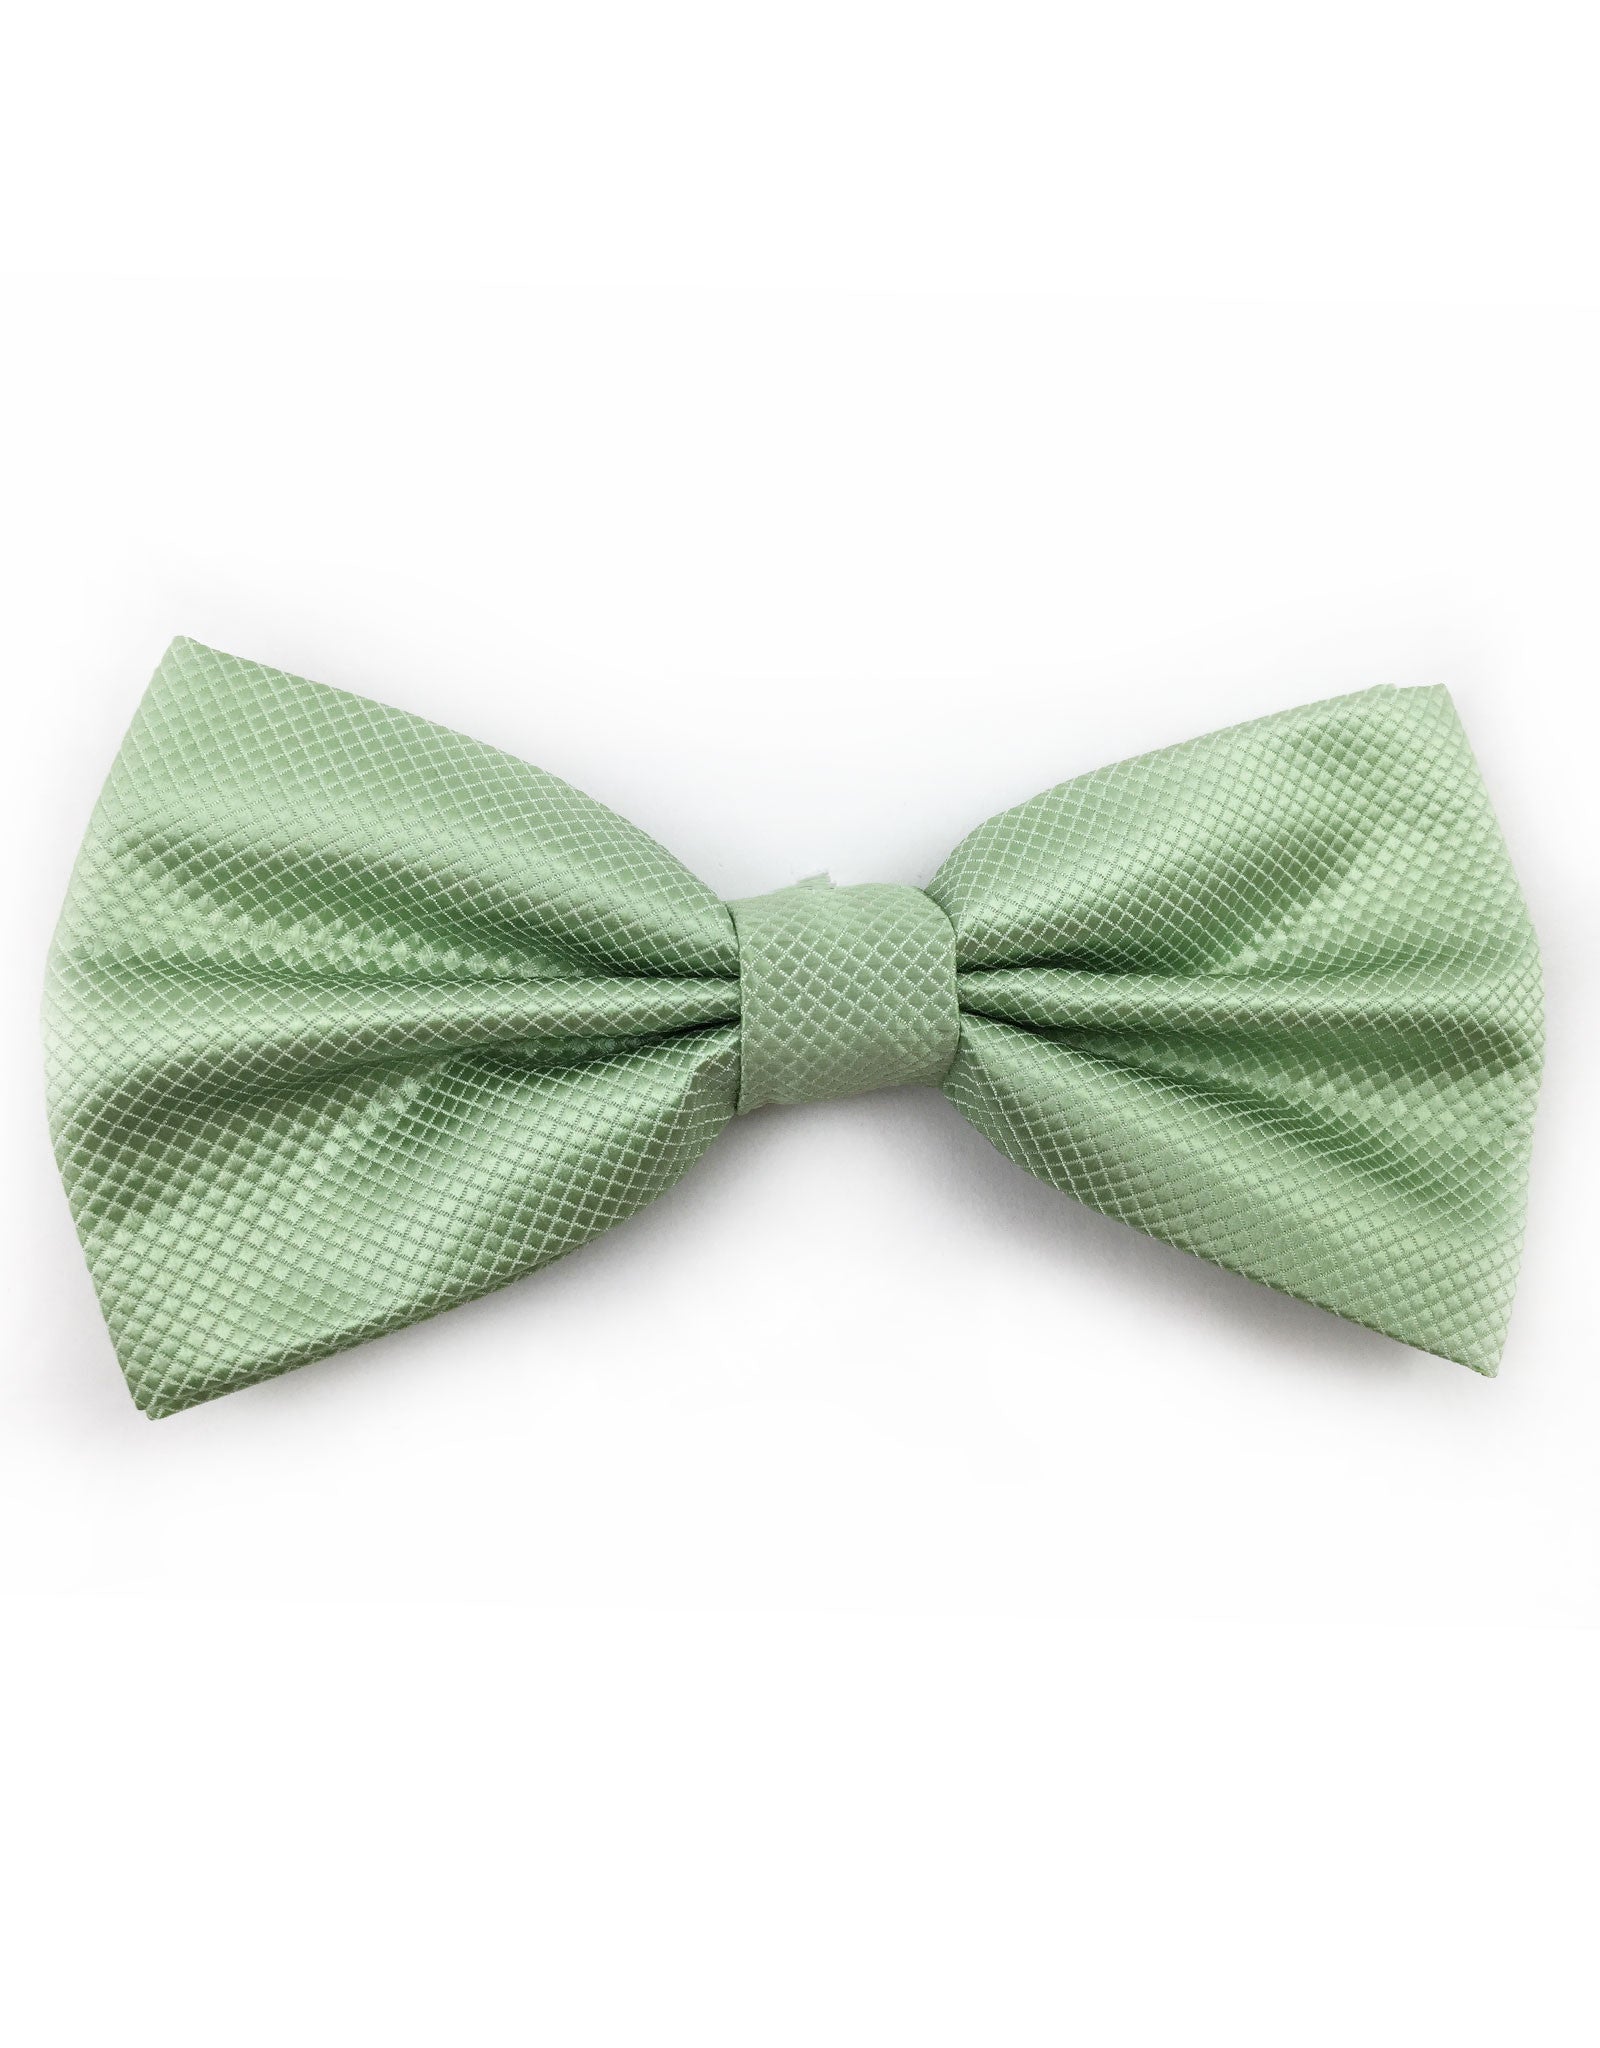 Mint Green Bow Tie – GentlemanJoe